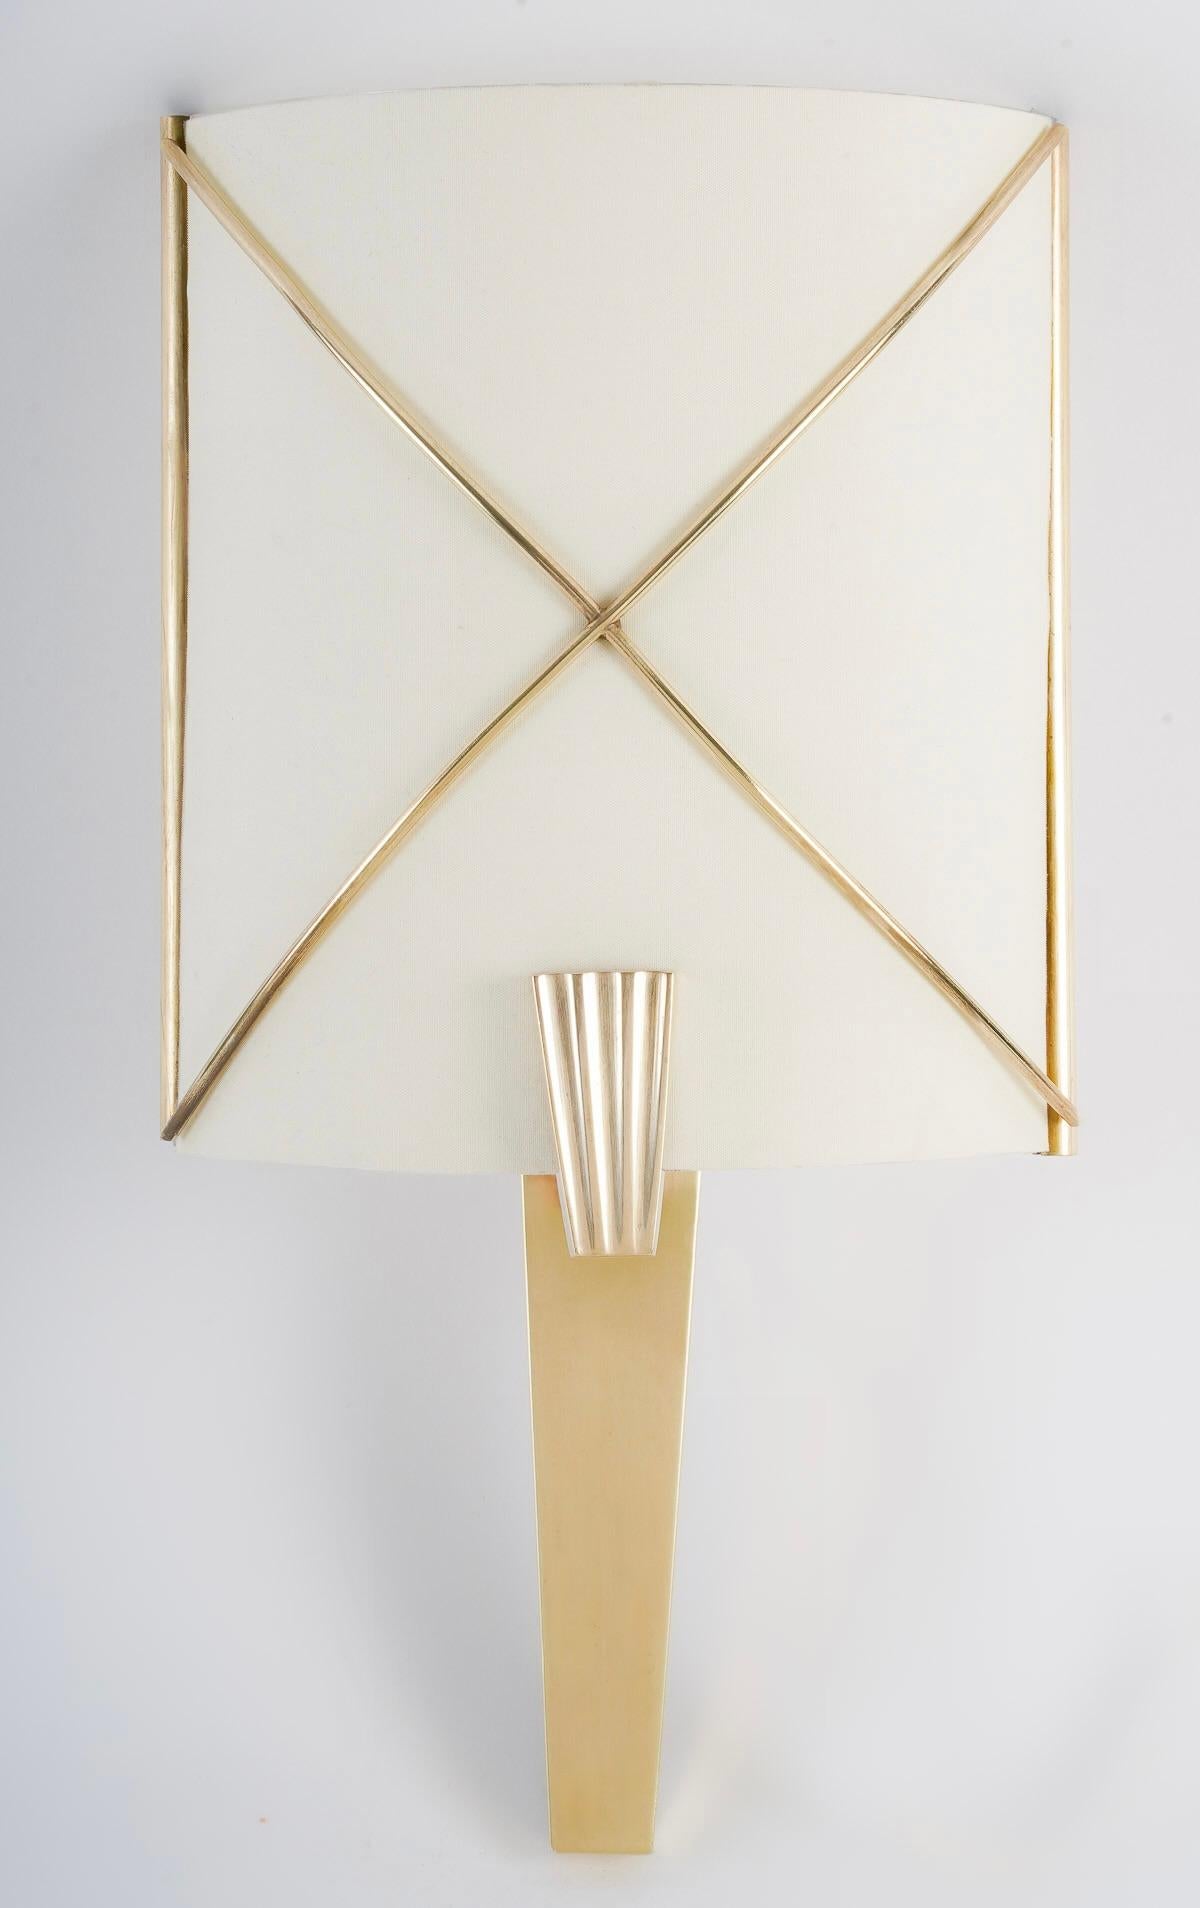 Composé d'une base triangulaire en laiton doré surmontée d'un écran diffuseur de lumière en coton blanc cassé placé sur la face de la partie supérieure, et décoré sur le devant de l'écran de croisillons en laiton doré.
L'écran est maintenu au